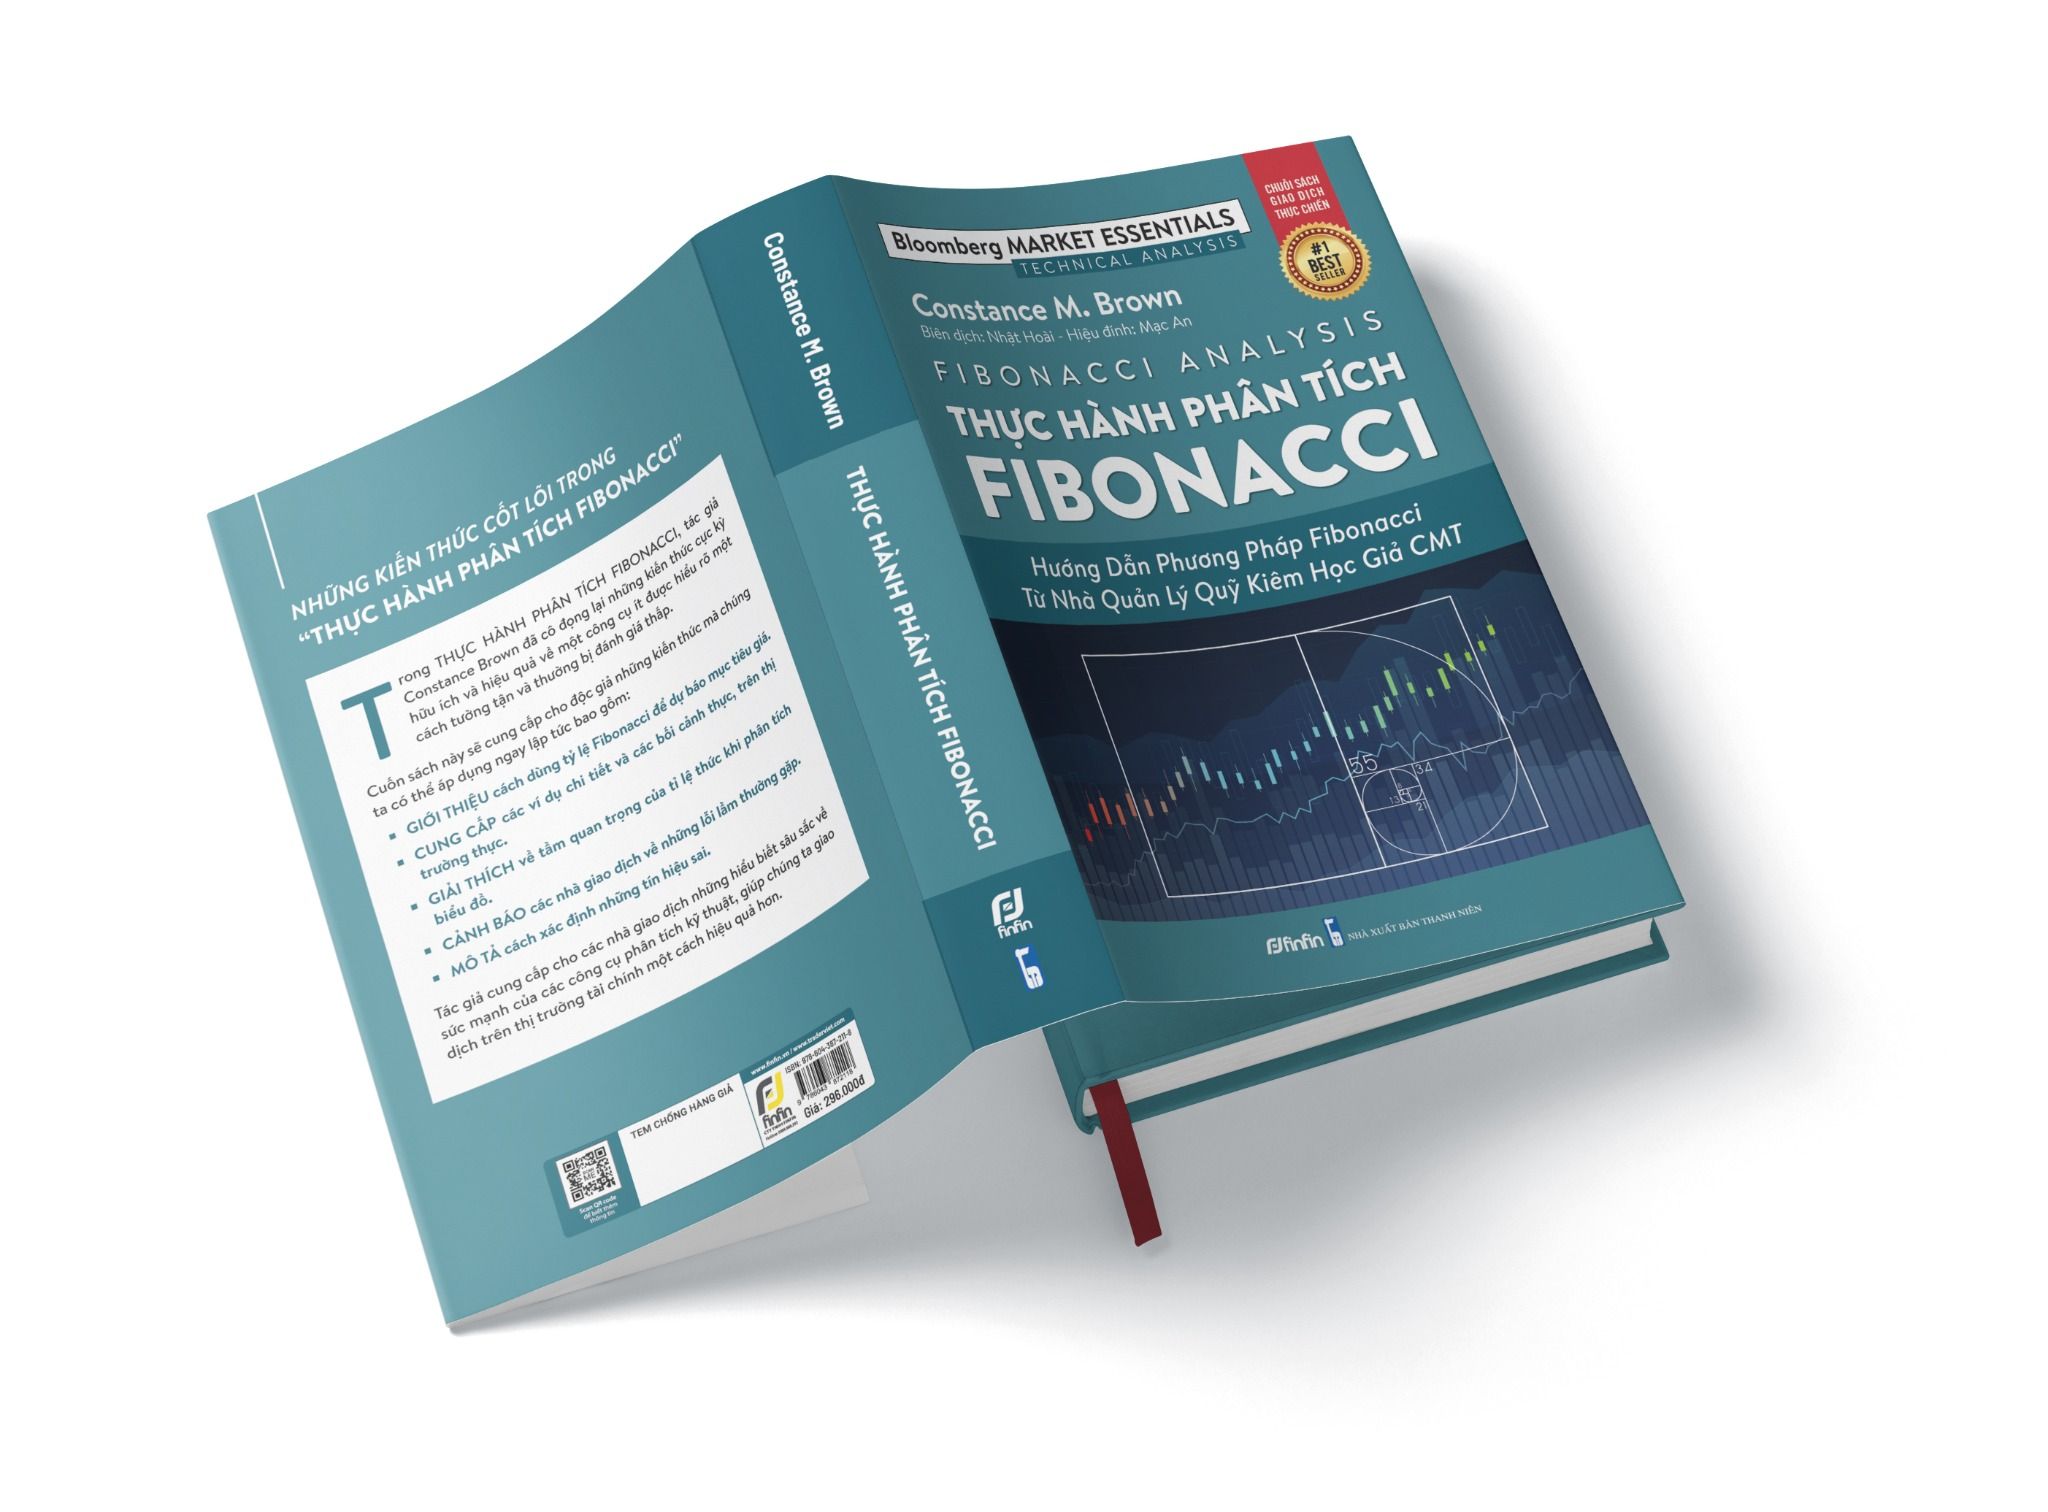  Thực hành Phân tích Fibonacci - Hướng dẫn Phương pháp Fibonacci từ Nhà Quản Lý Quỹ kiêm Học giả CMT 